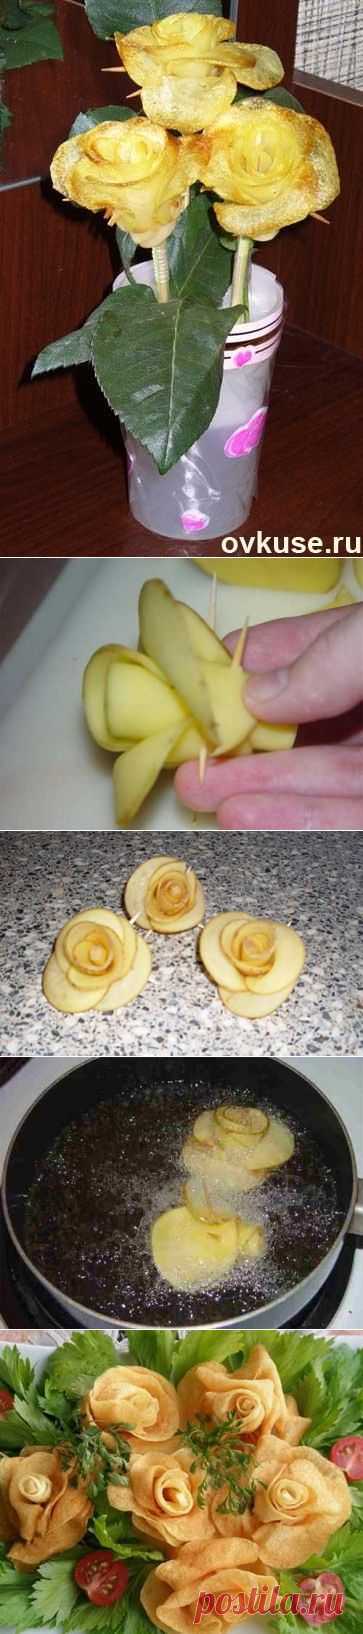 Розы из картошки